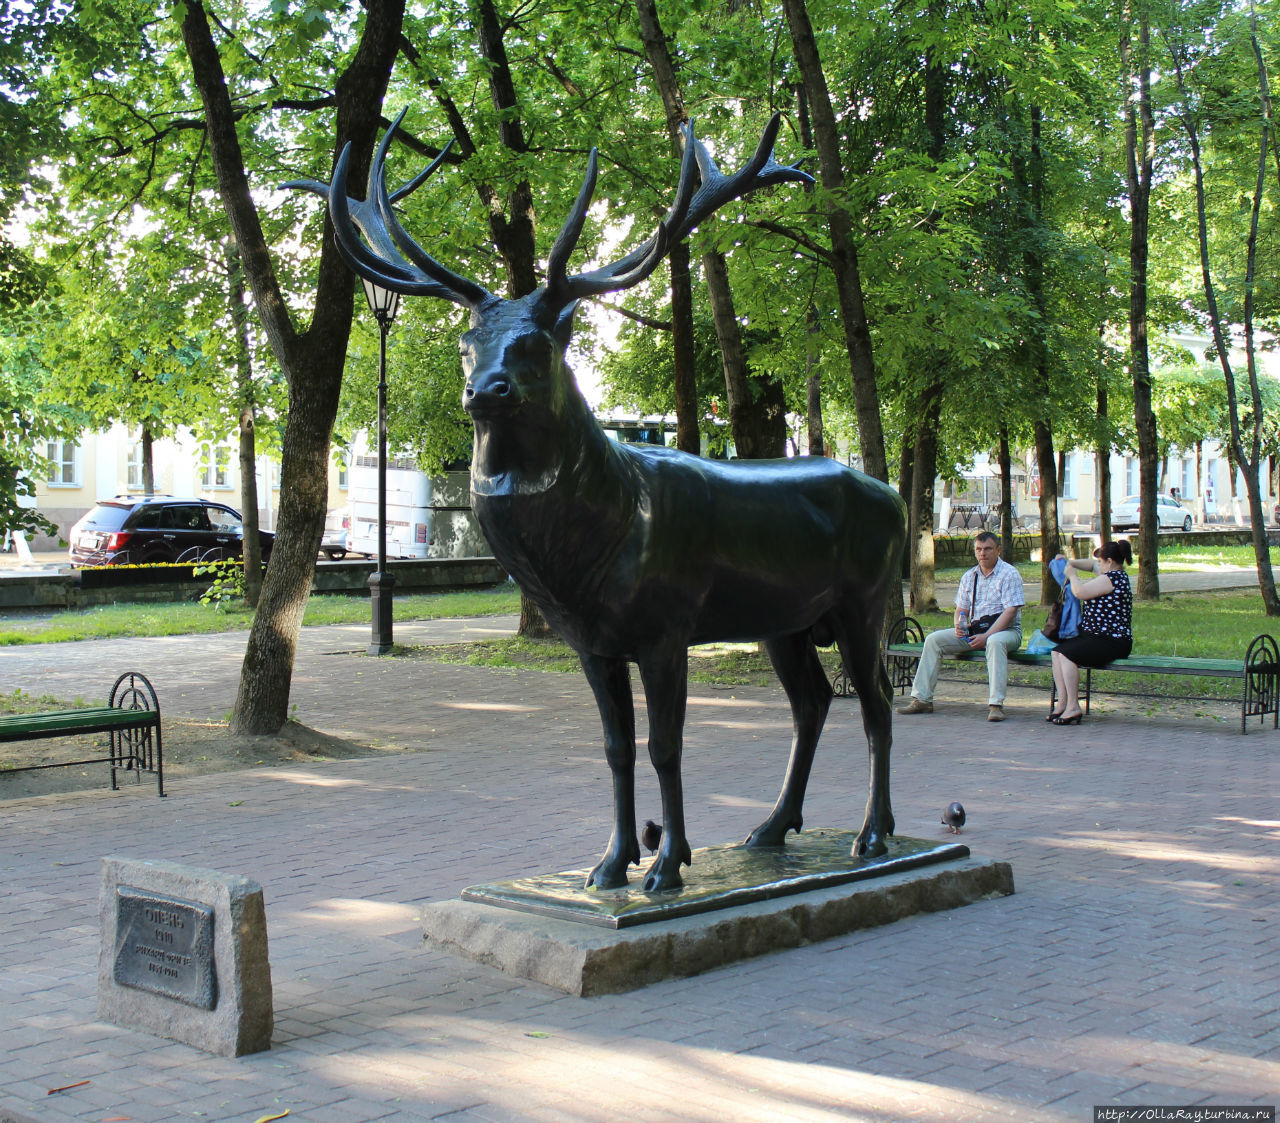 А вот скульптура оленя — одна из самых главных достопримечательностей сада.  Также трофей, была вывезена с дачи Германа Геринга. И, увы, находятся люди, желающие иметь оригинальное фото — взгромождаются на скульптуру верхом... Смоленск, Россия